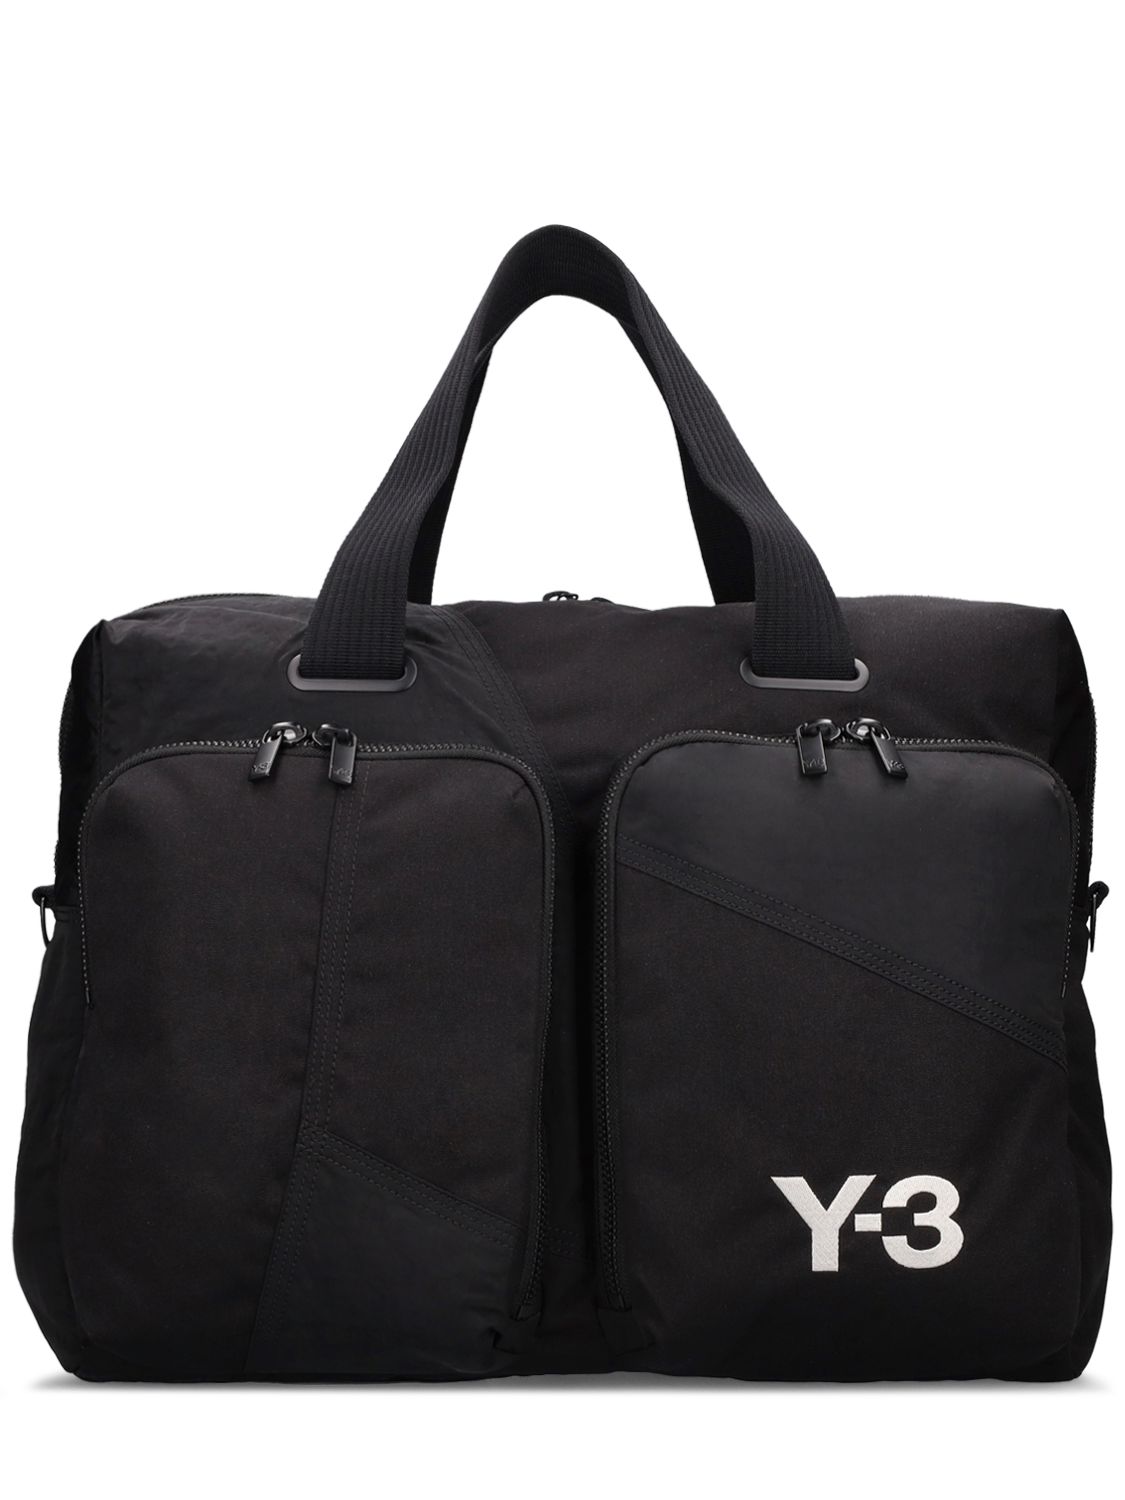 Y-3 Hold All Duffel Bag In Black